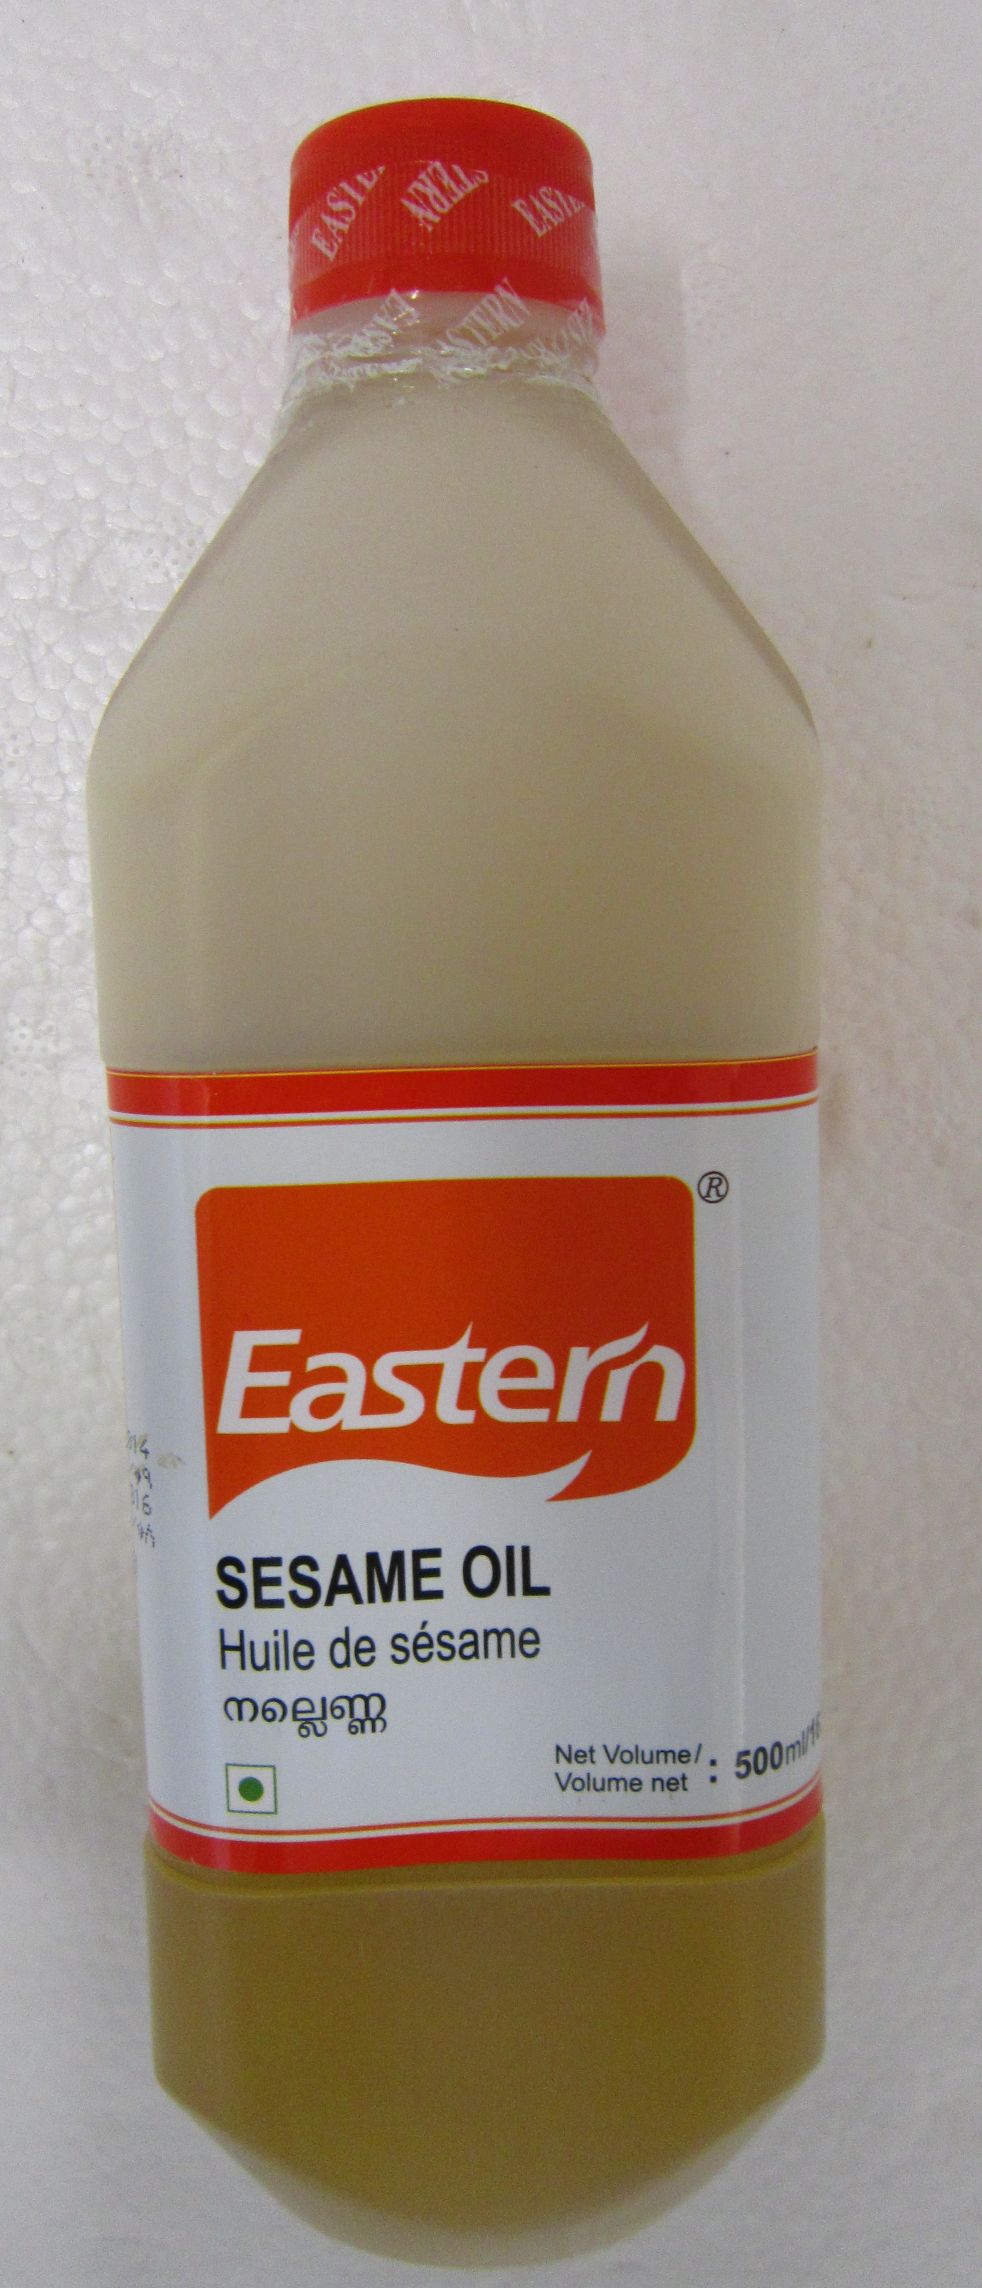 Eastern Sesame Oil Image